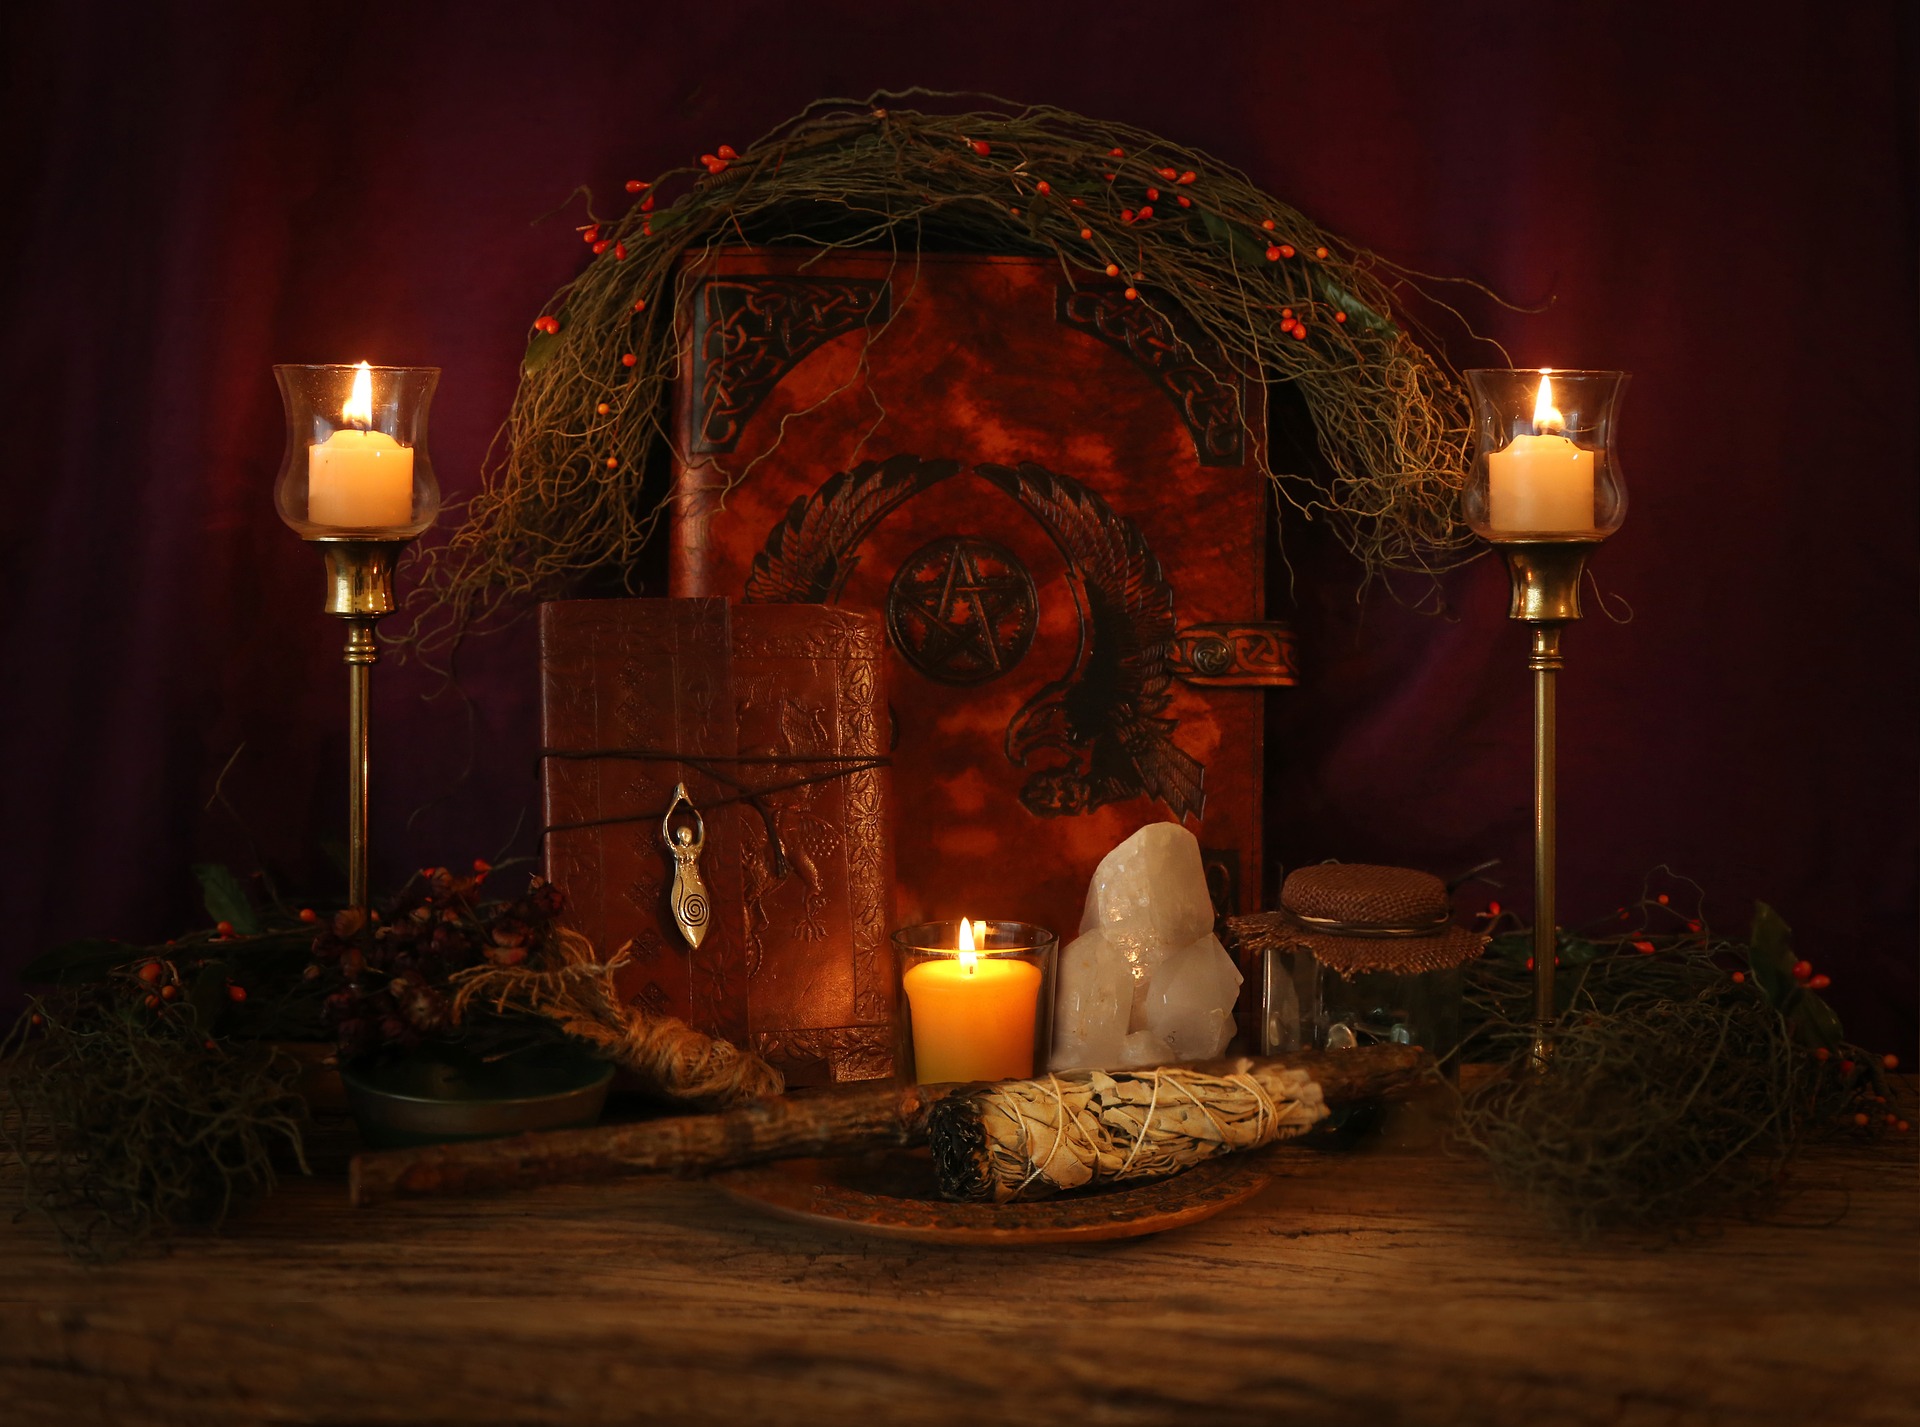 Pagan Holidays Vs. Christian Holidays Historical Facts